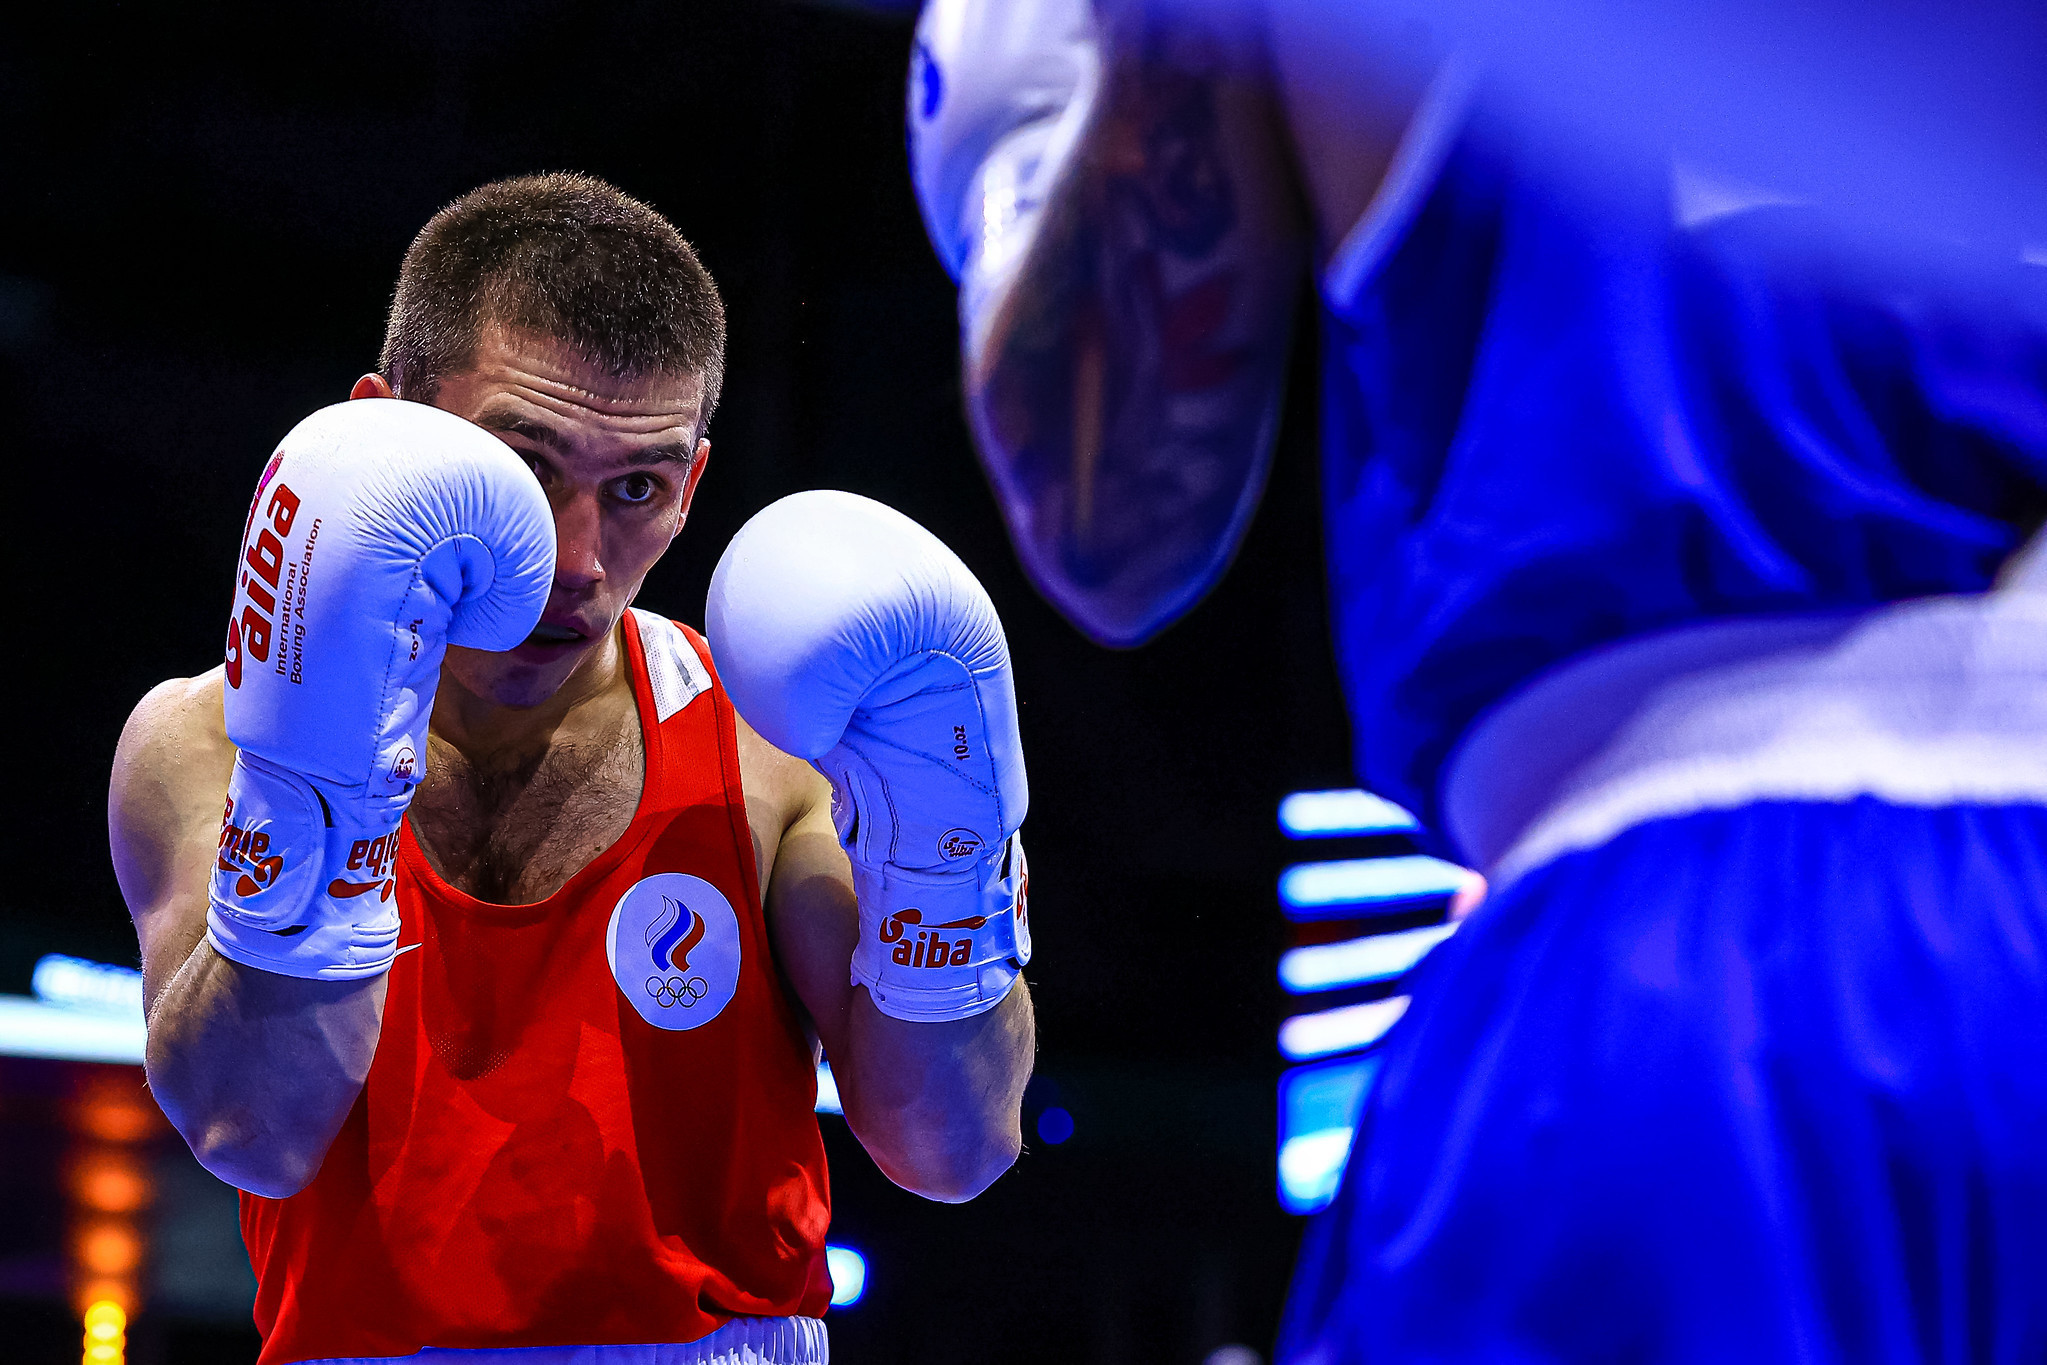 Russian Boxing Federation's Akhtem Zakirov fighting Spain's Martin Molina ©AIBA